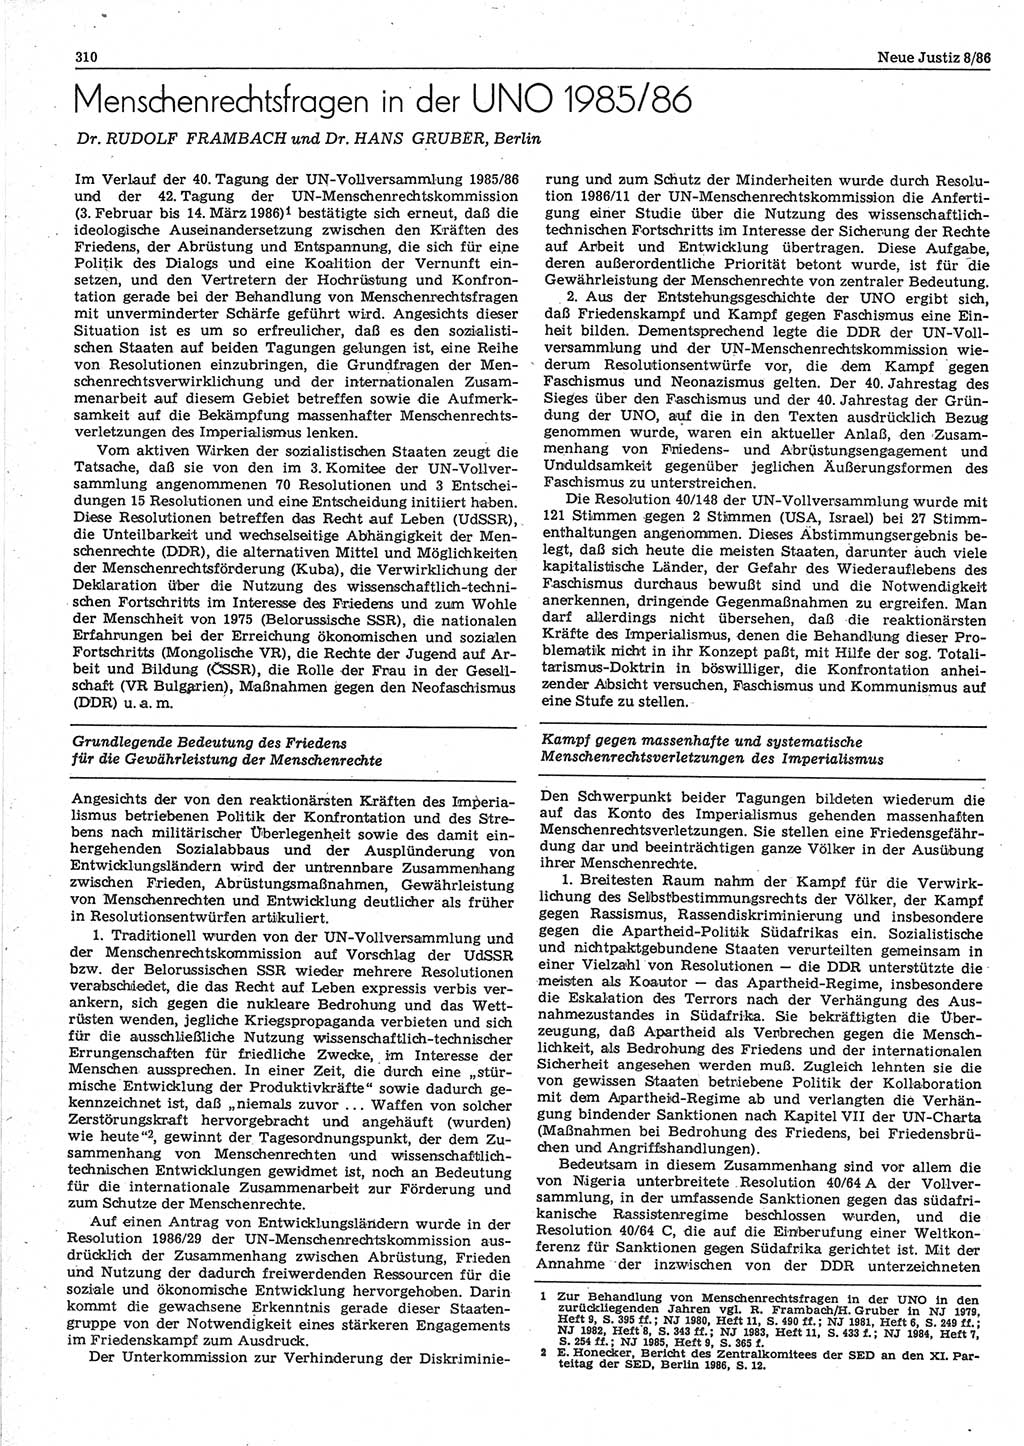 Neue Justiz (NJ), Zeitschrift für sozialistisches Recht und Gesetzlichkeit [Deutsche Demokratische Republik (DDR)], 40. Jahrgang 1986, Seite 310 (NJ DDR 1986, S. 310)